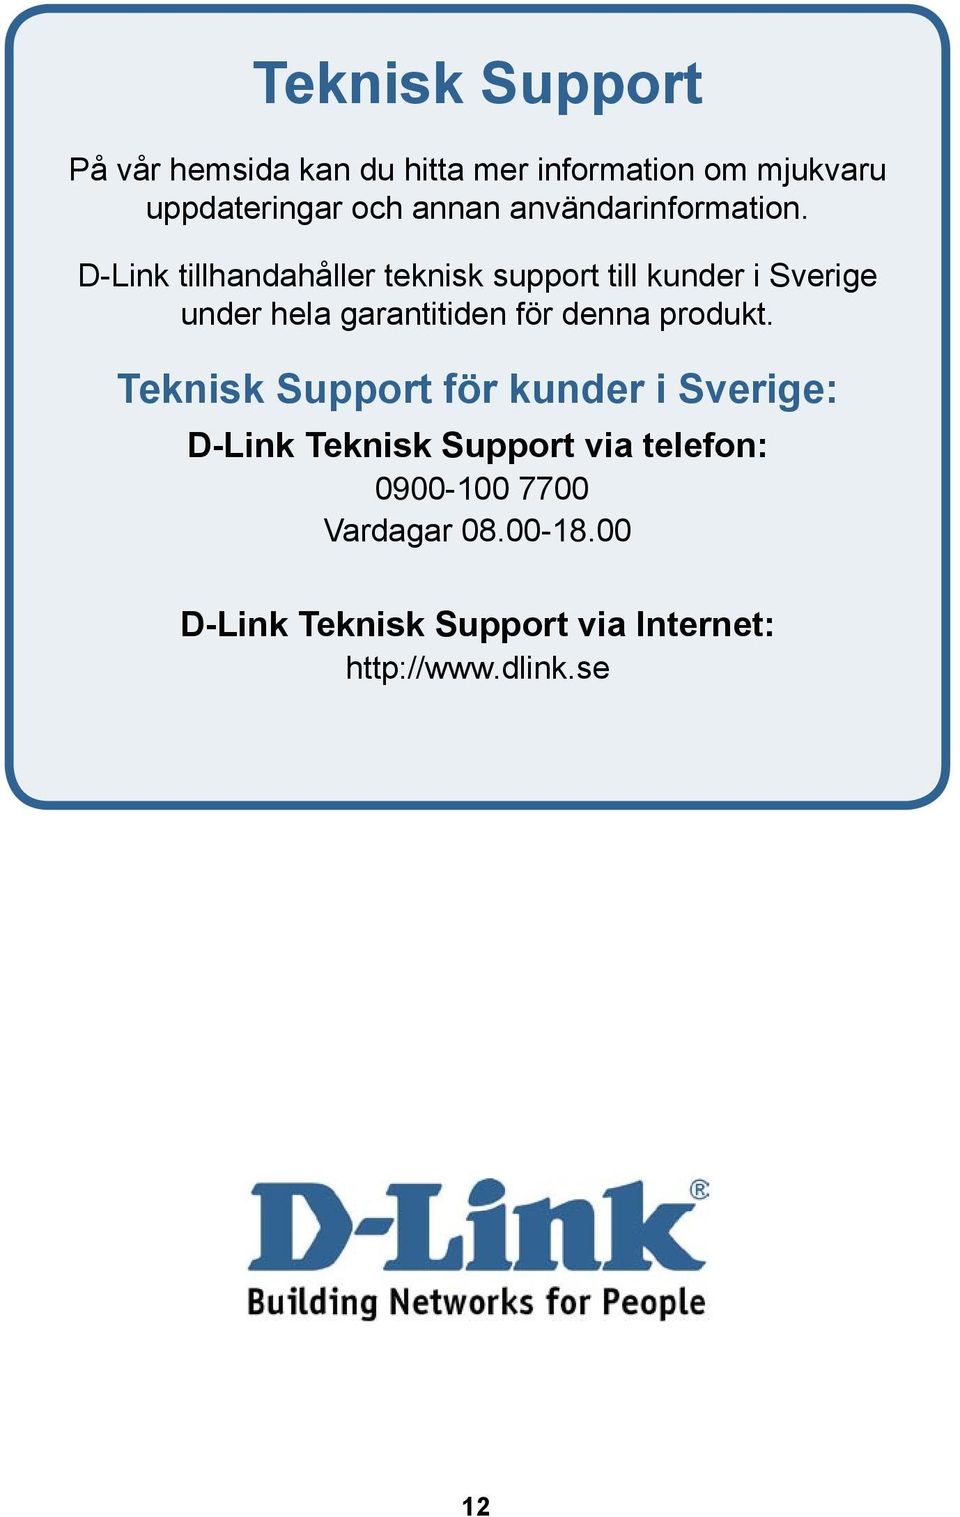 D-Link tillhandahåller teknisk support till kunder i Sverige under hela garantitiden för denna